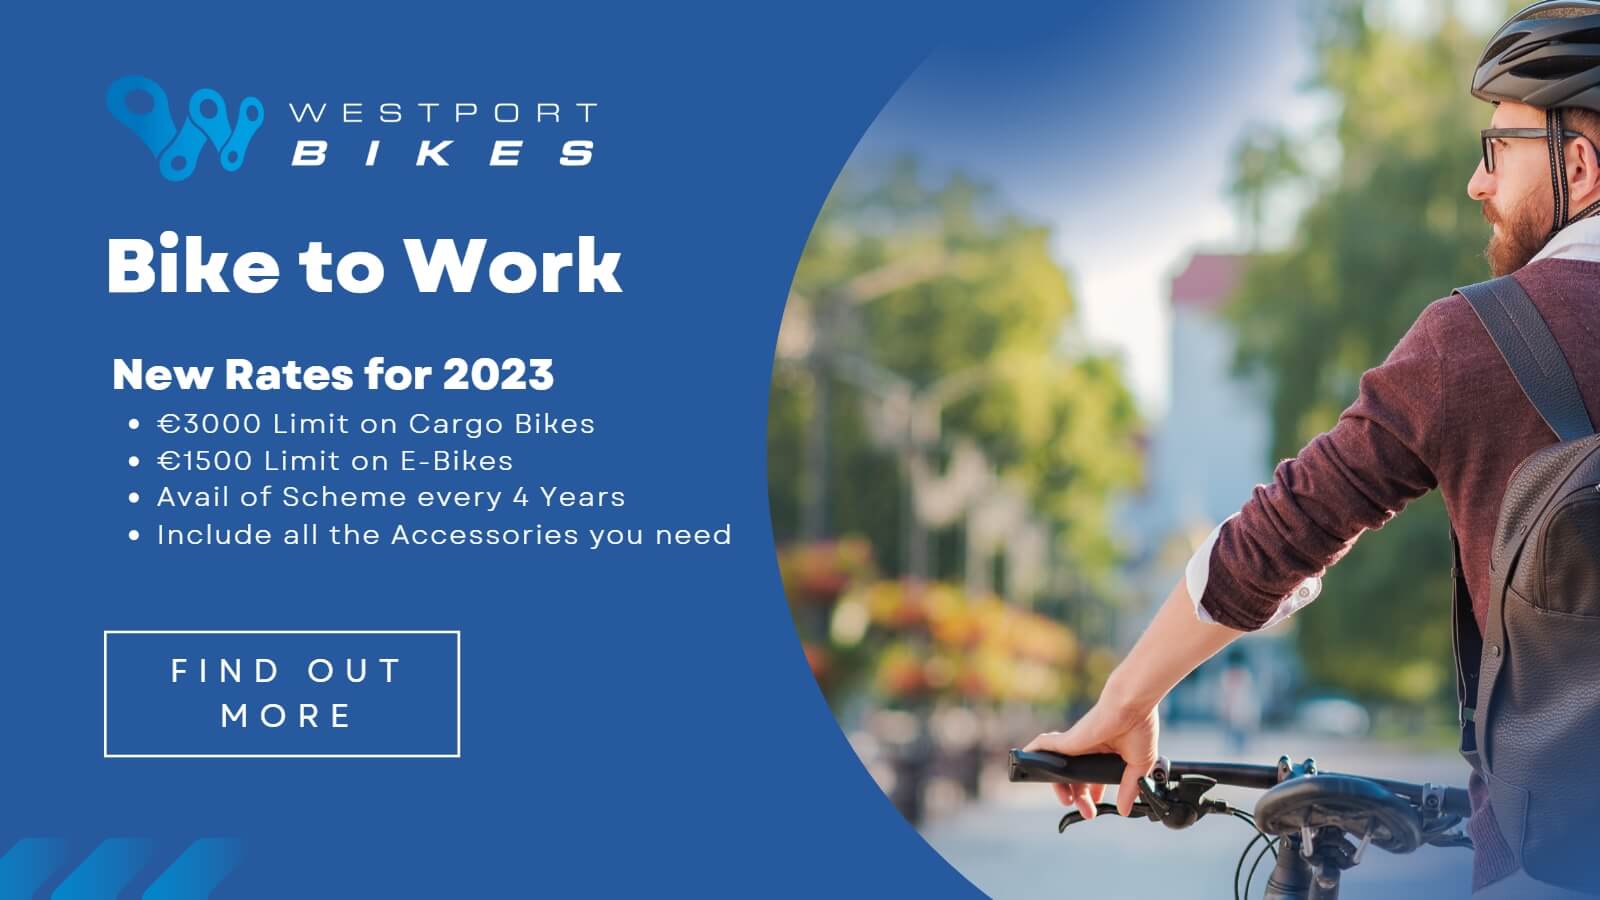 Westport Bike Shop Bike to Work Scheme